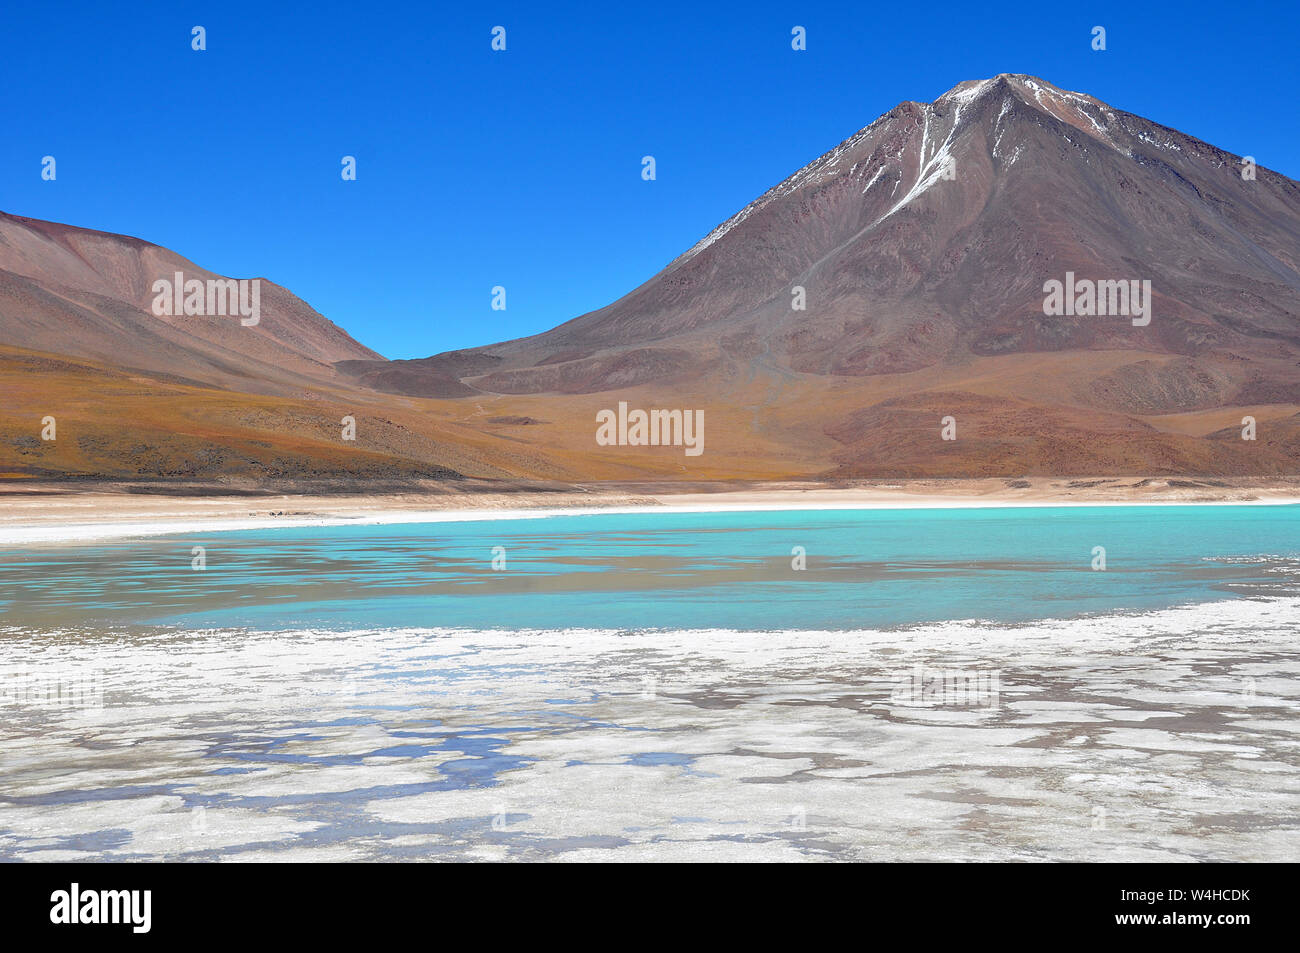 Boliviano lagunas nelle montagne delle Ande regione oltre 4000 metri dal mare Foto Stock